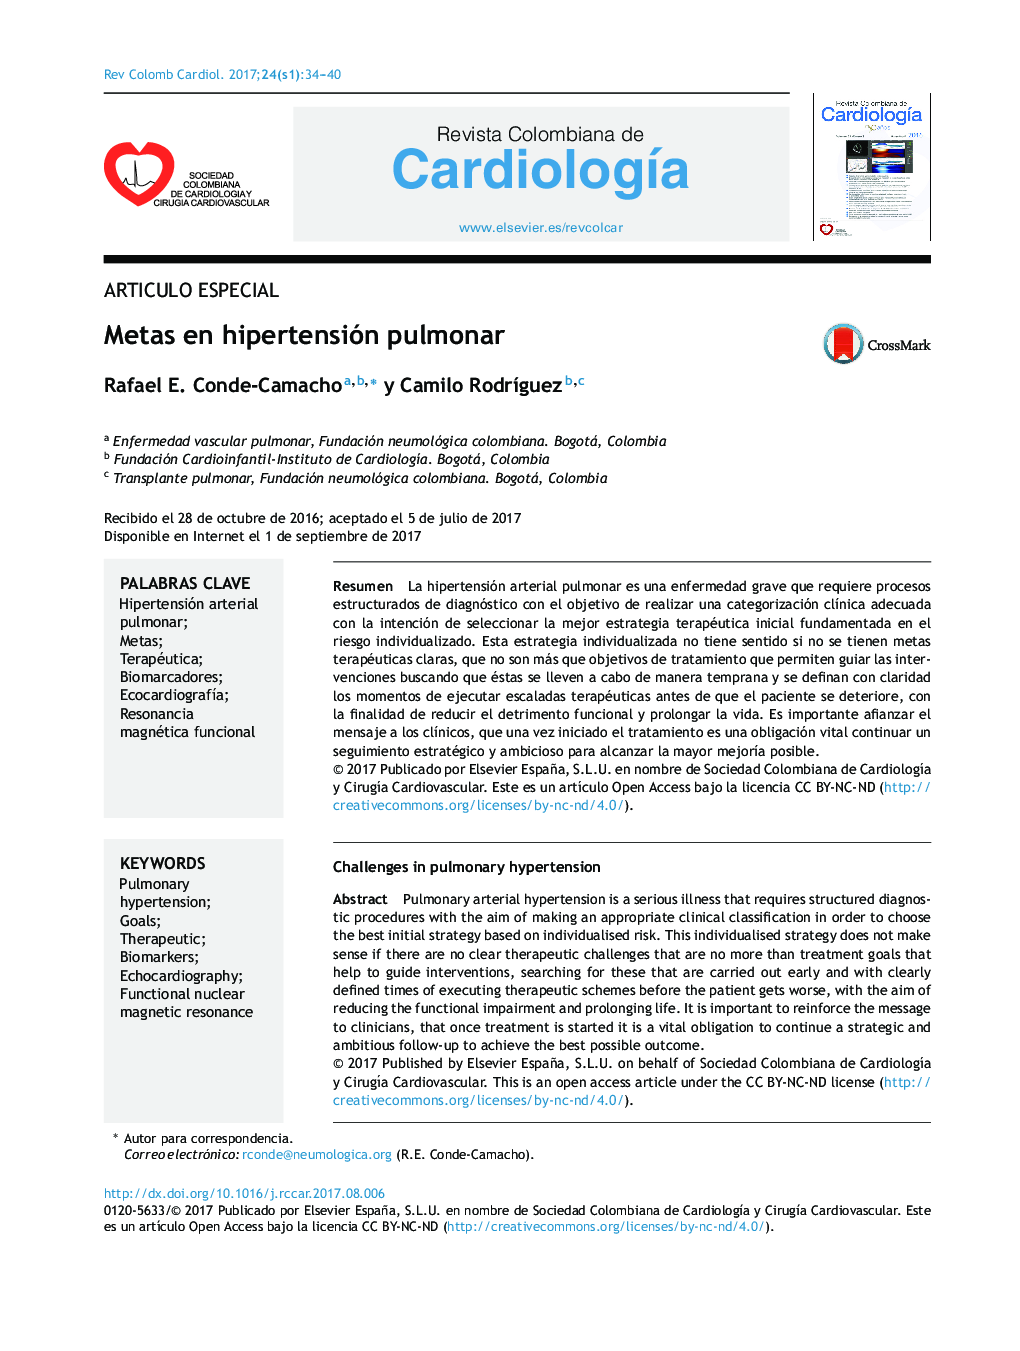 Articulo EspecialMetas en hipertensión pulmonarChallenges in pulmonary hypertension